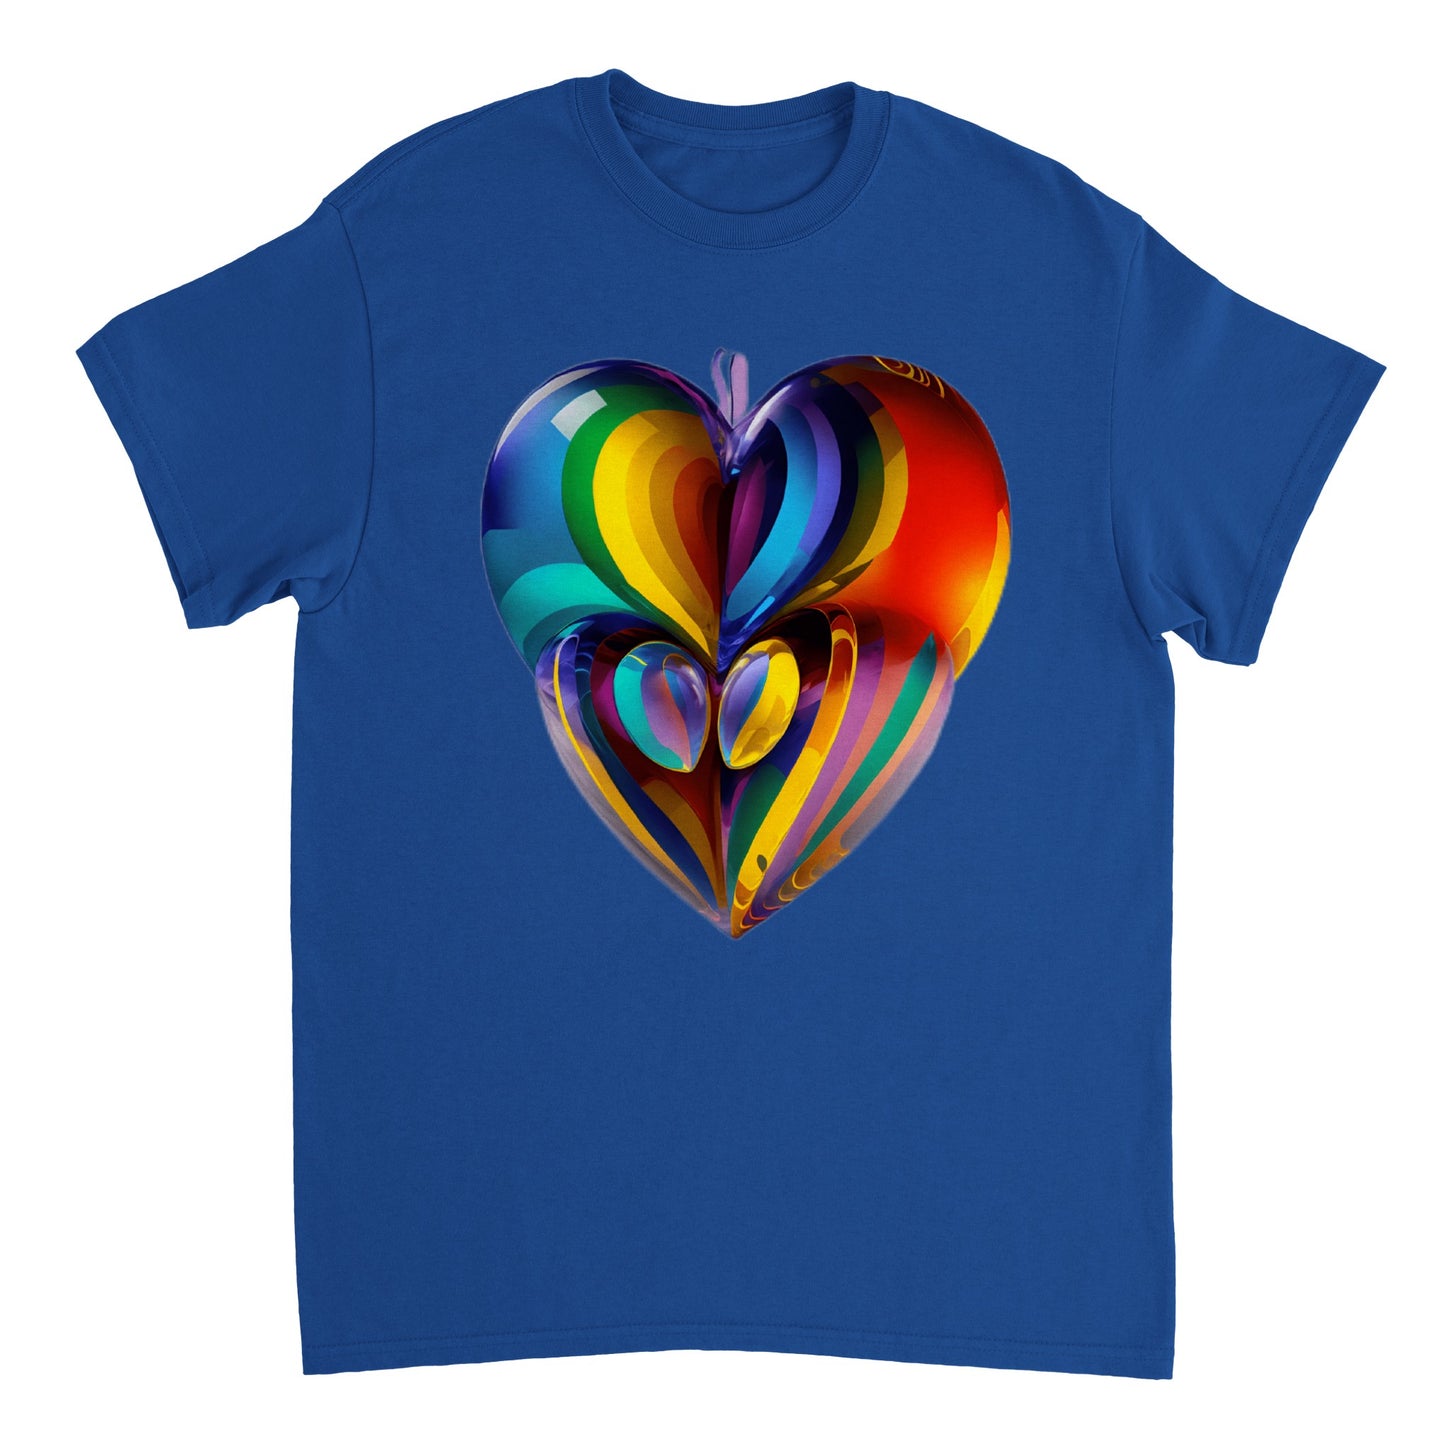 Love Heart - Heavyweight Unisex Crewneck T-shirt 16